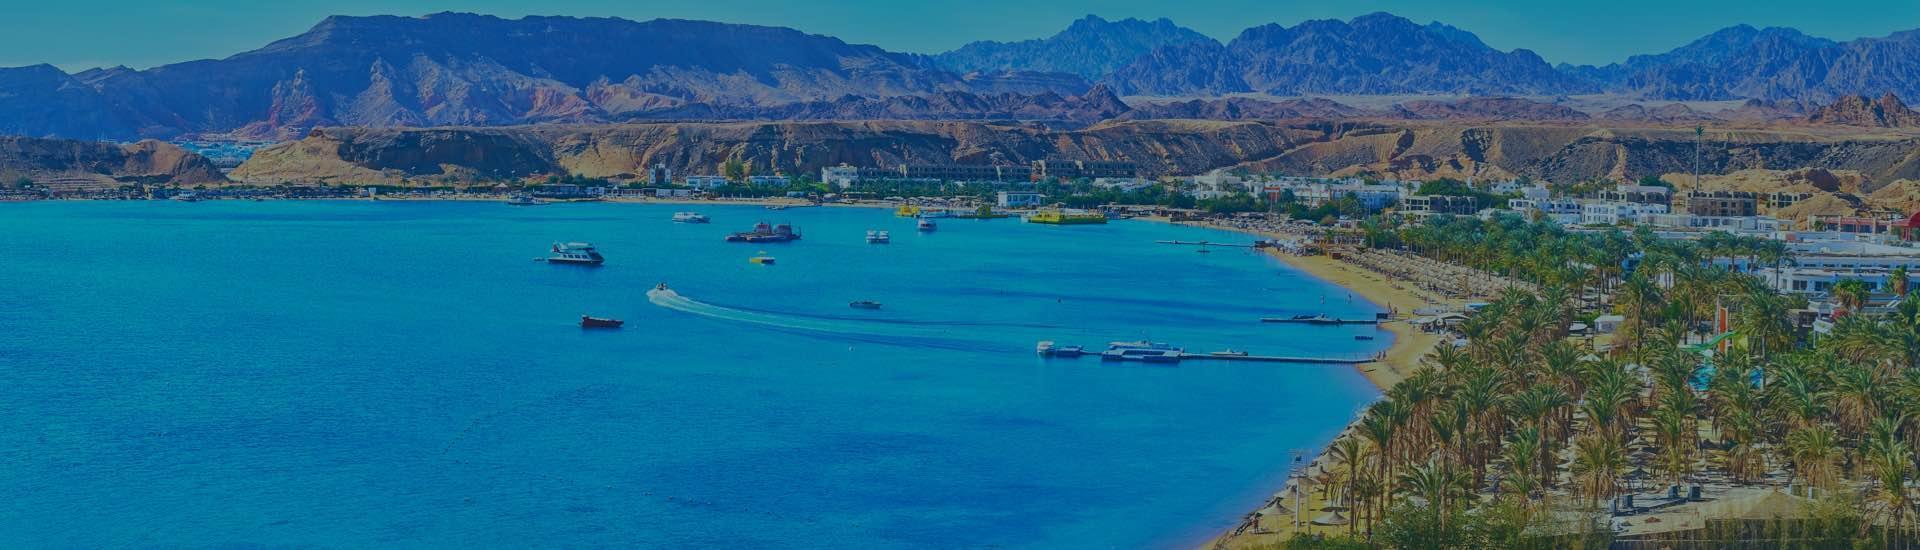 Search Hotels in Sharm El Sheikh